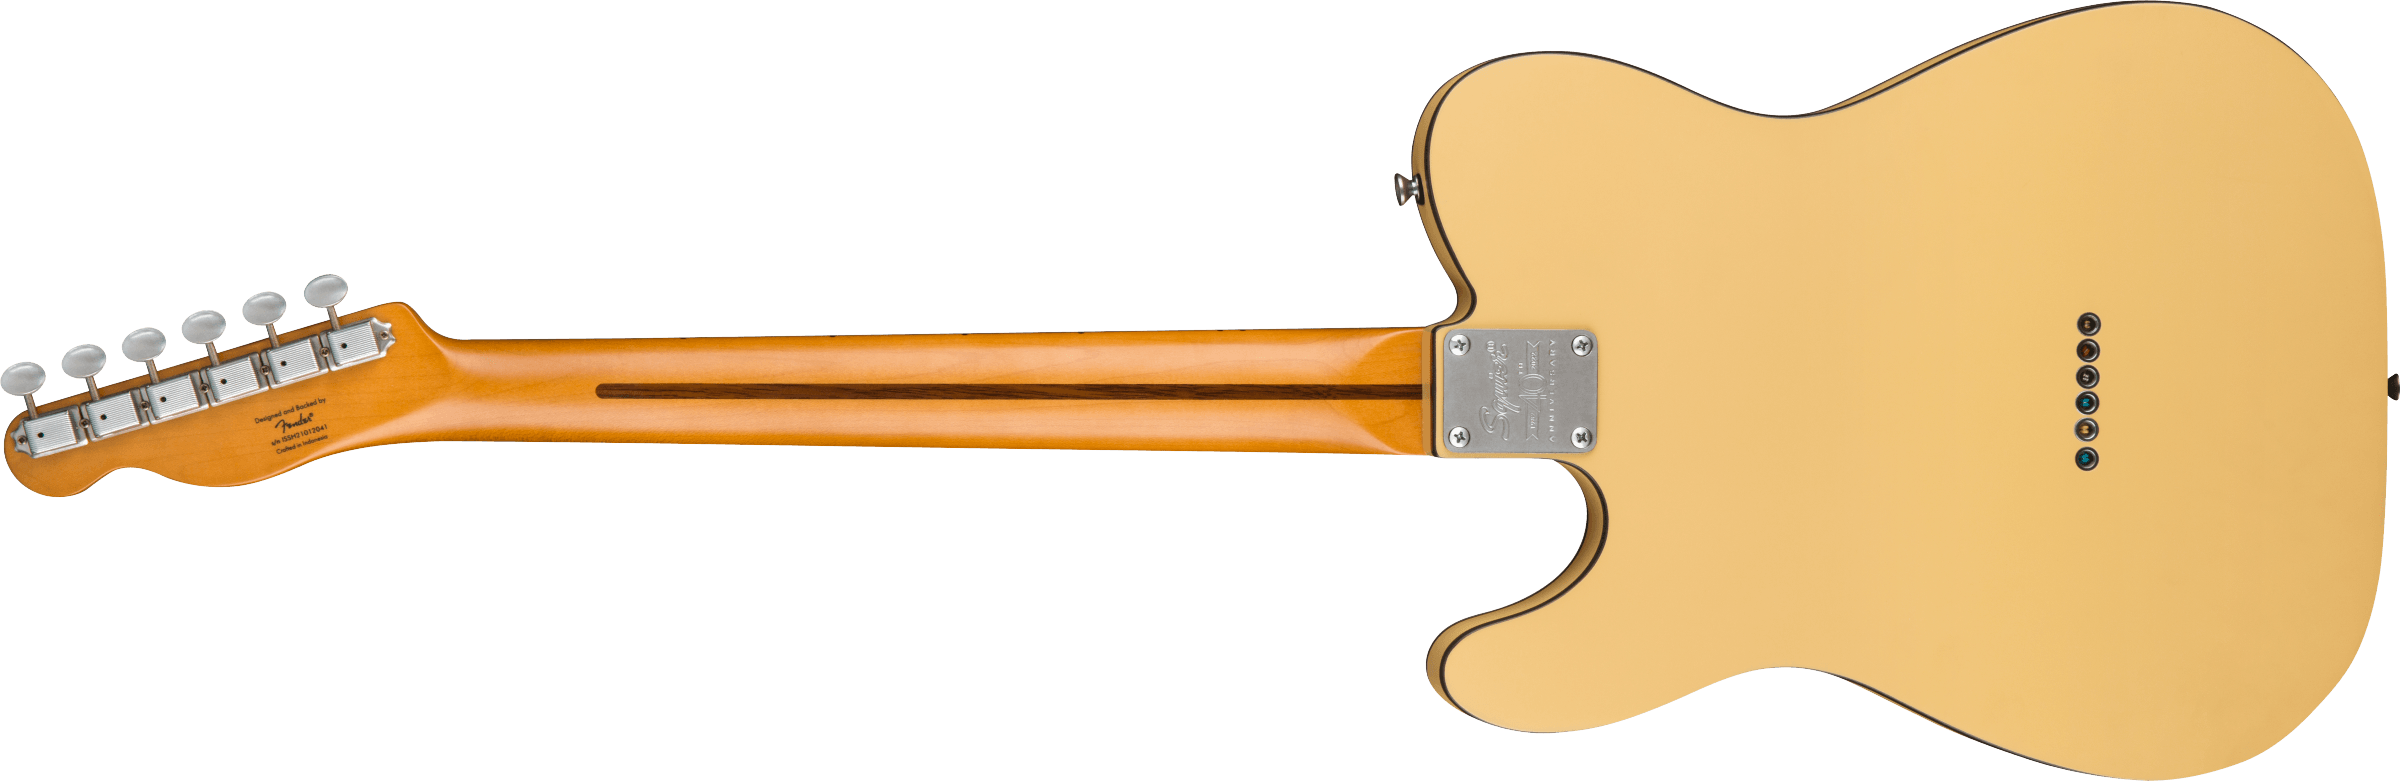 Squier Tele 40th Anniversary Vintage Edition Mn - Satin Vintage Blonde - Televorm elektrische gitaar - Variation 1